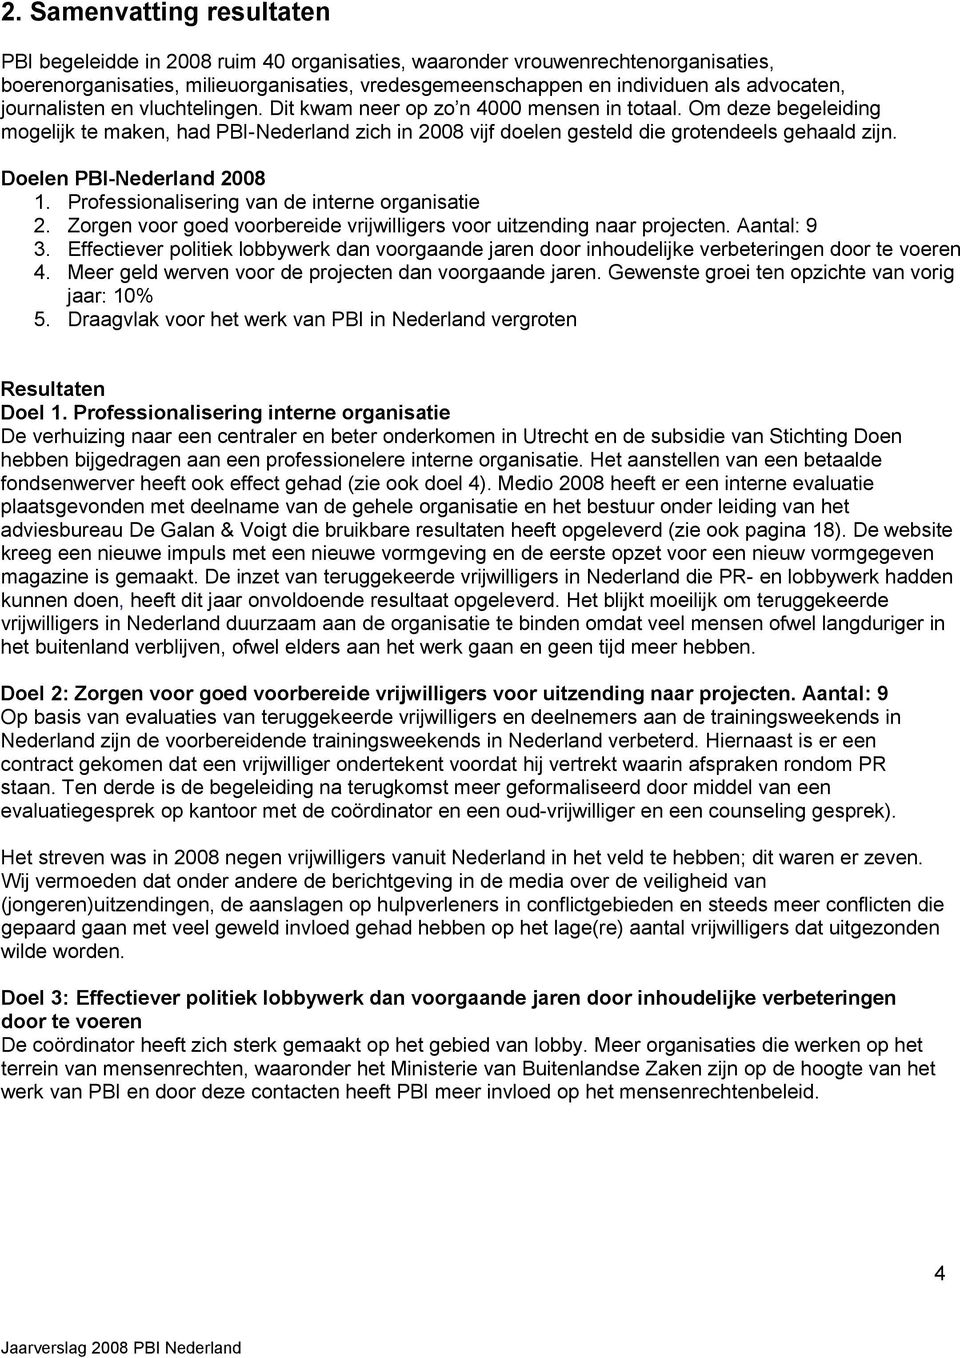 Doelen PBI-Nederland 2008 1. Professionalisering van de interne organisatie 2. Zorgen voor goed voorbereide vrijwilligers voor uitzending naar projecten. Aantal: 9 3.